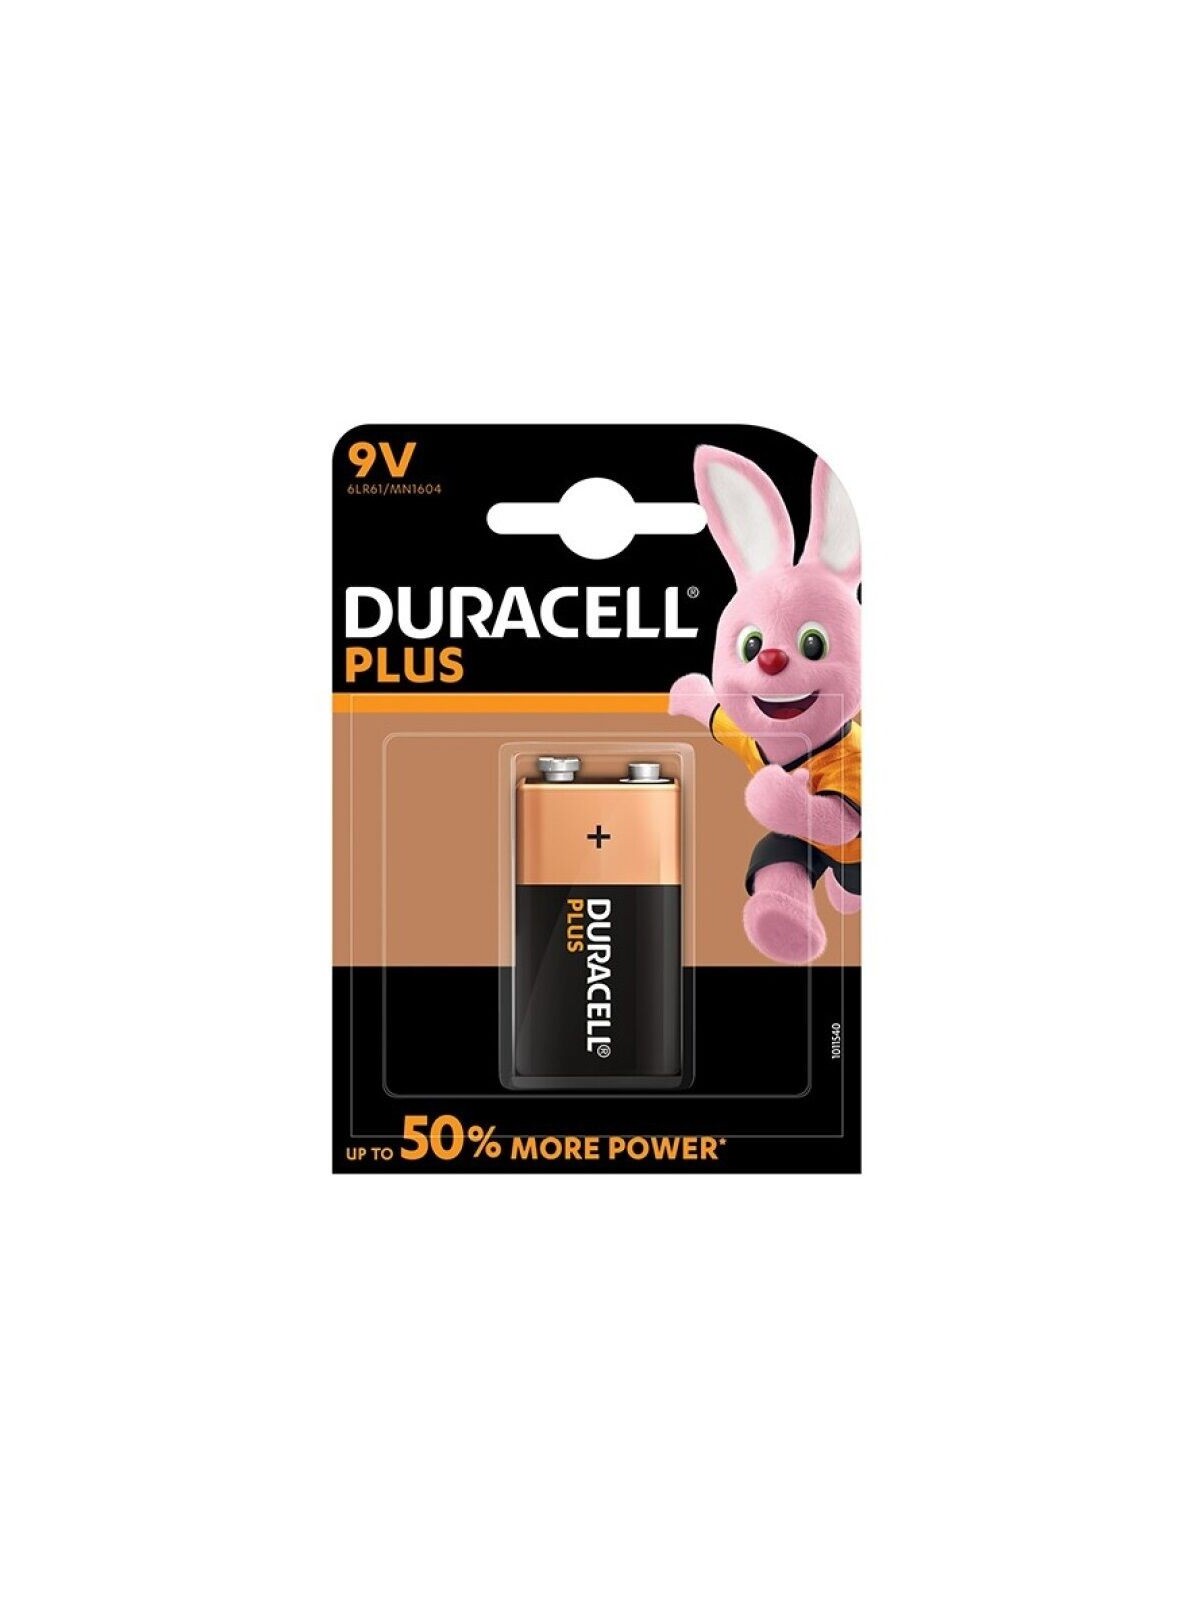 Duracell Plus Power Pila Alcalina 9V LR61 Blíster*1 - Comprar Pilas y baterías Duracell - Pilas & baterías (1)